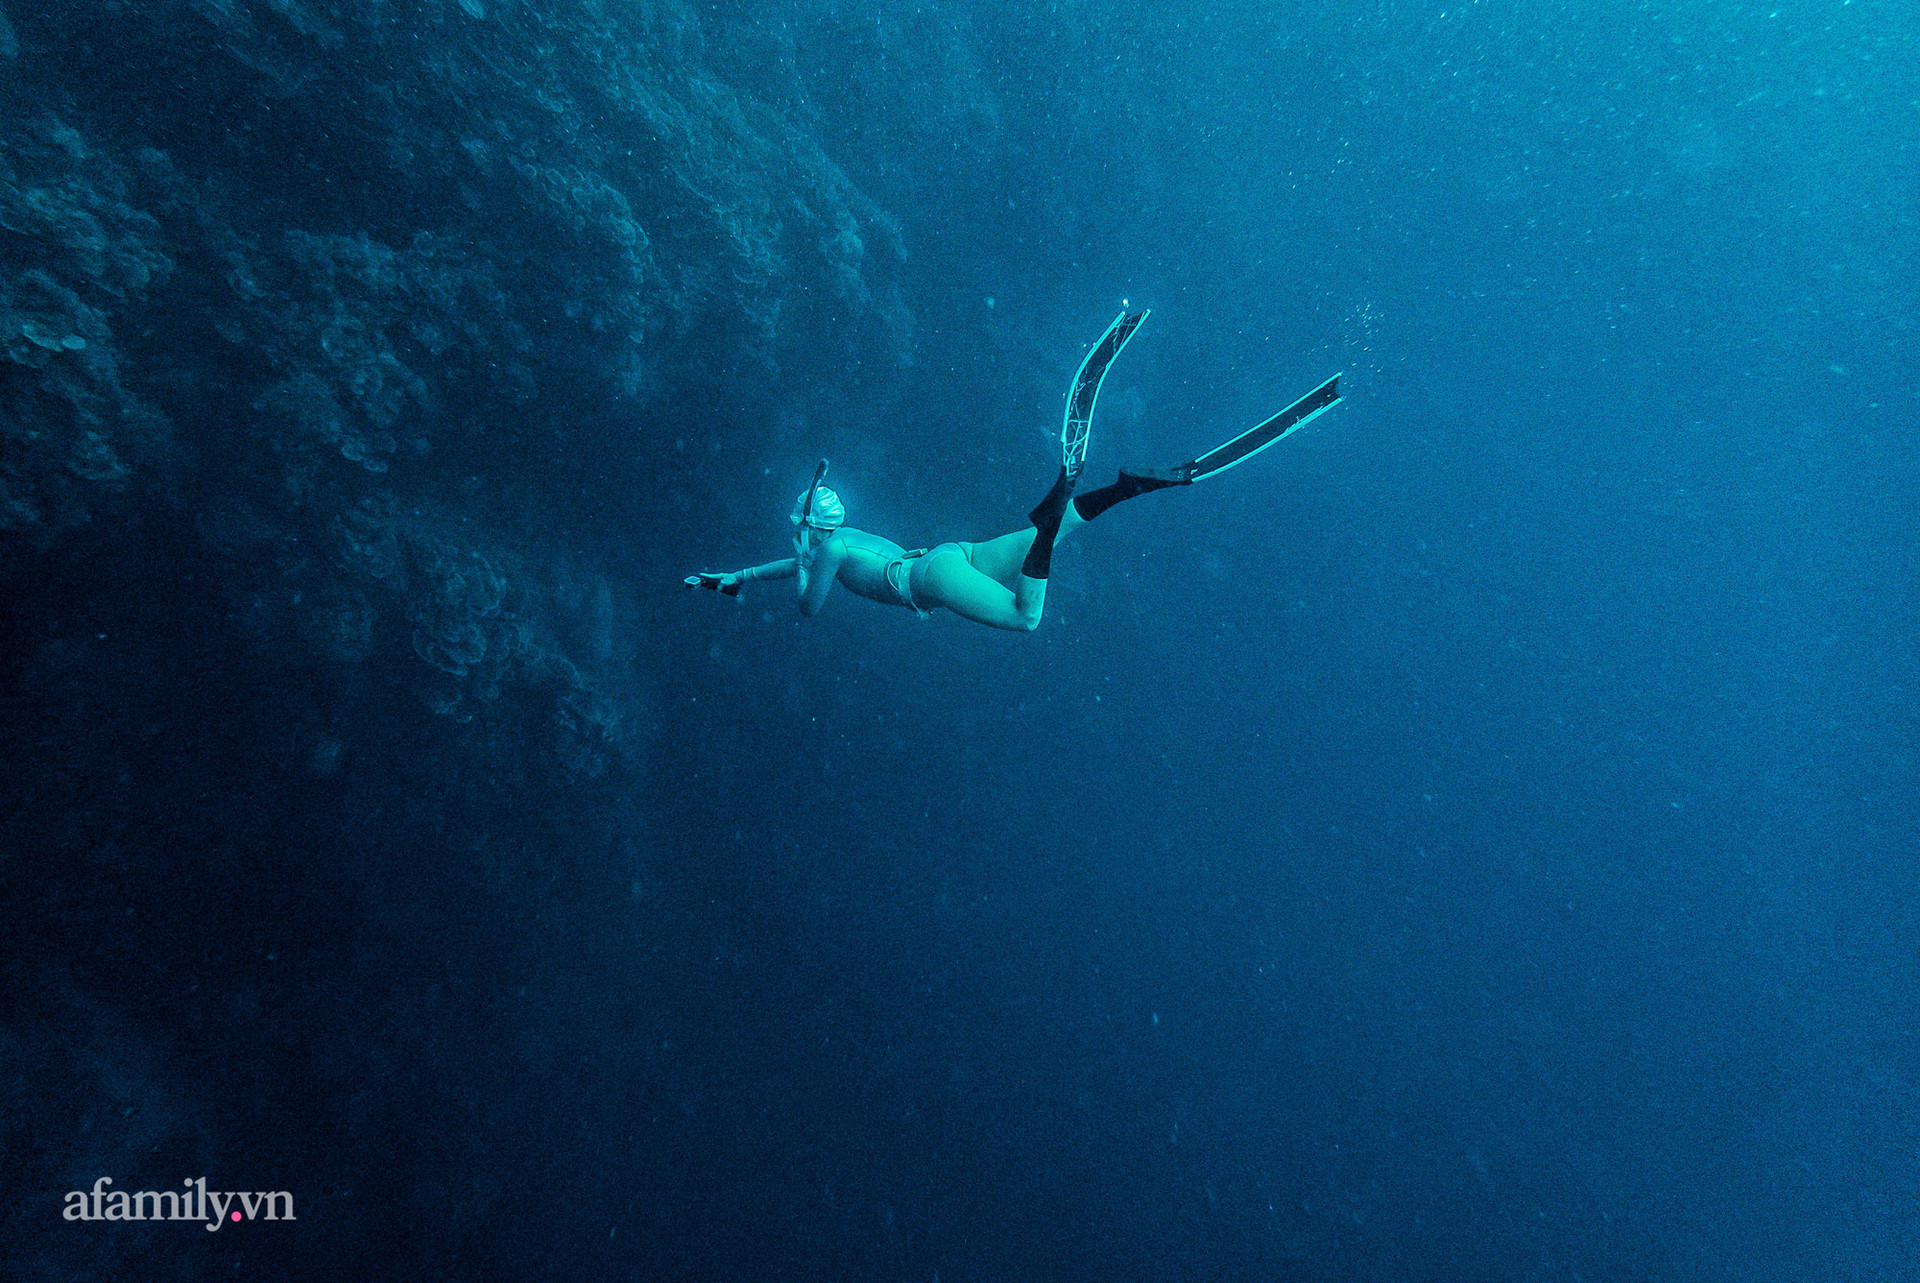  Zen Le - Cô gái Sài Gòn đam mê thể thao lặn biển đích thân trải nghiệm những tầng đại dương nguy hiểm mà không phải ai cũng được tới  - Ảnh 12.